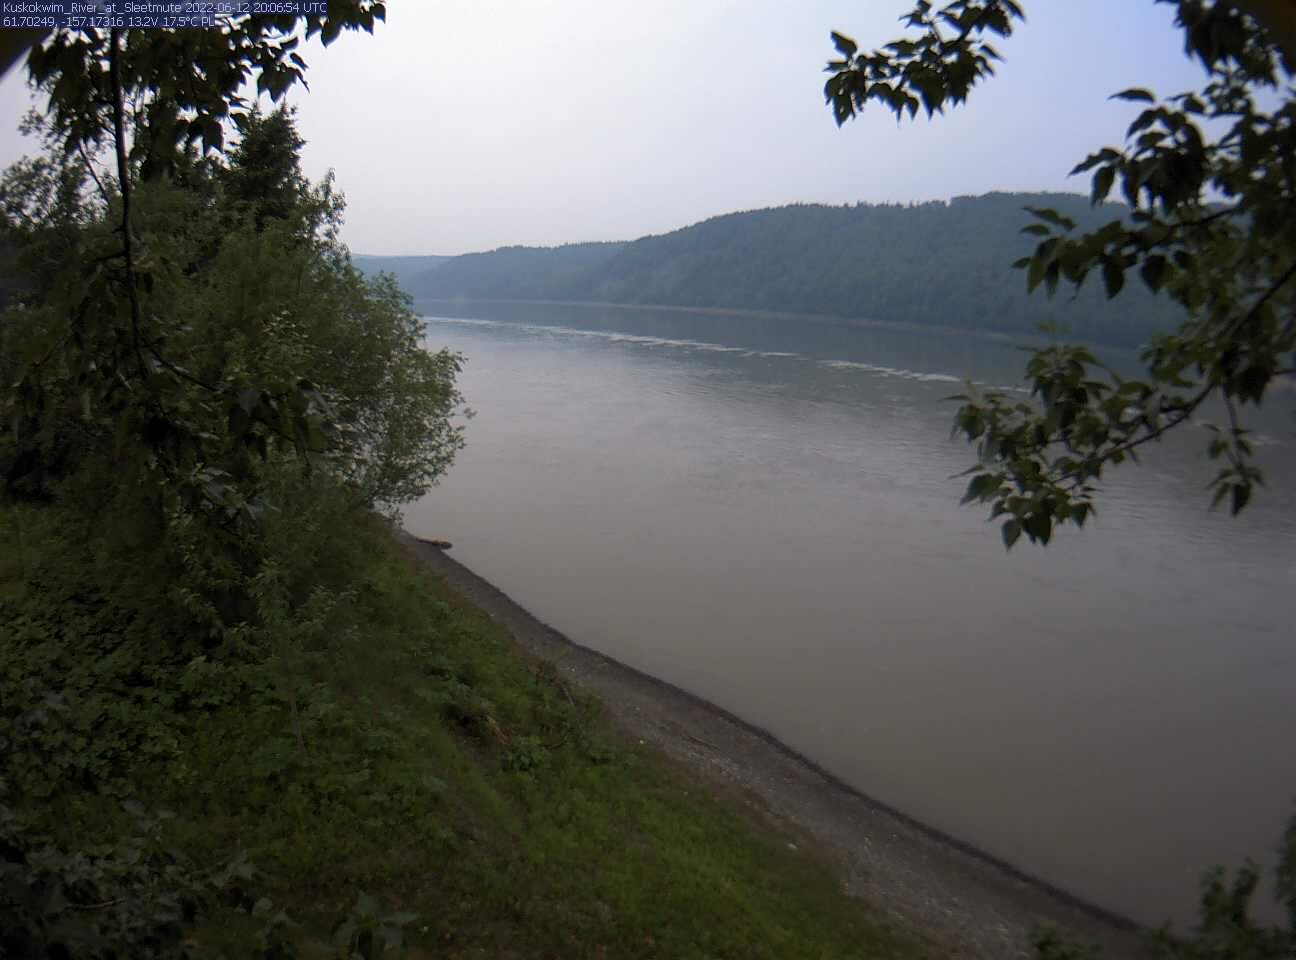 Kuskokwim_River_at_Sleetmute_20220612200656.jpg